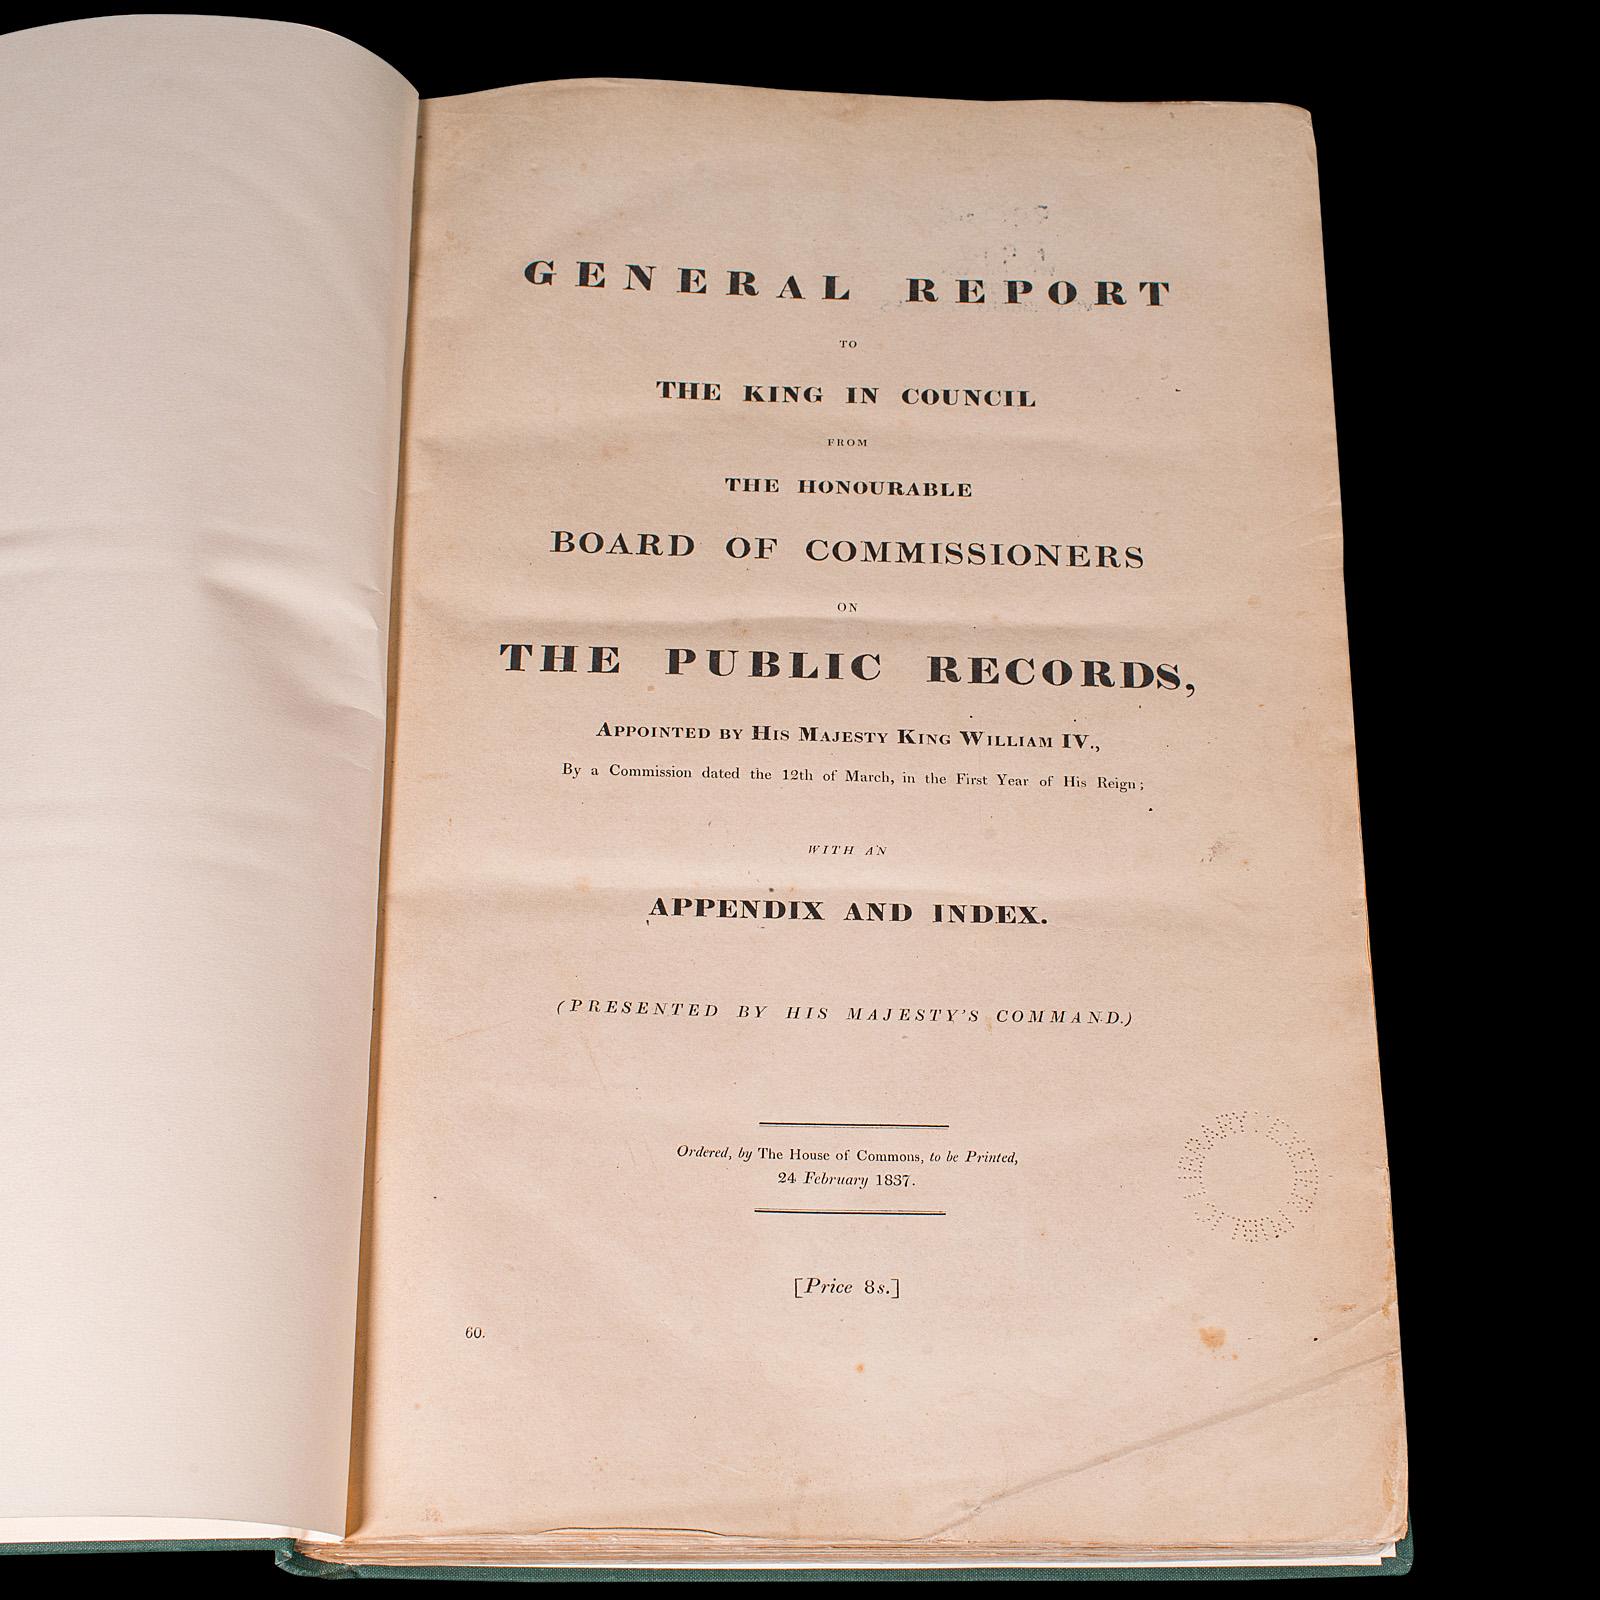 Il s'agit d'un grand livre de référence ancien, Rapport général sur les archives publiques. Imprimé en anglais, un registre de la Chambre des communes relié plus tardivement, datant de la période de Guillaume IV, publié en 1837.

Titre complet :